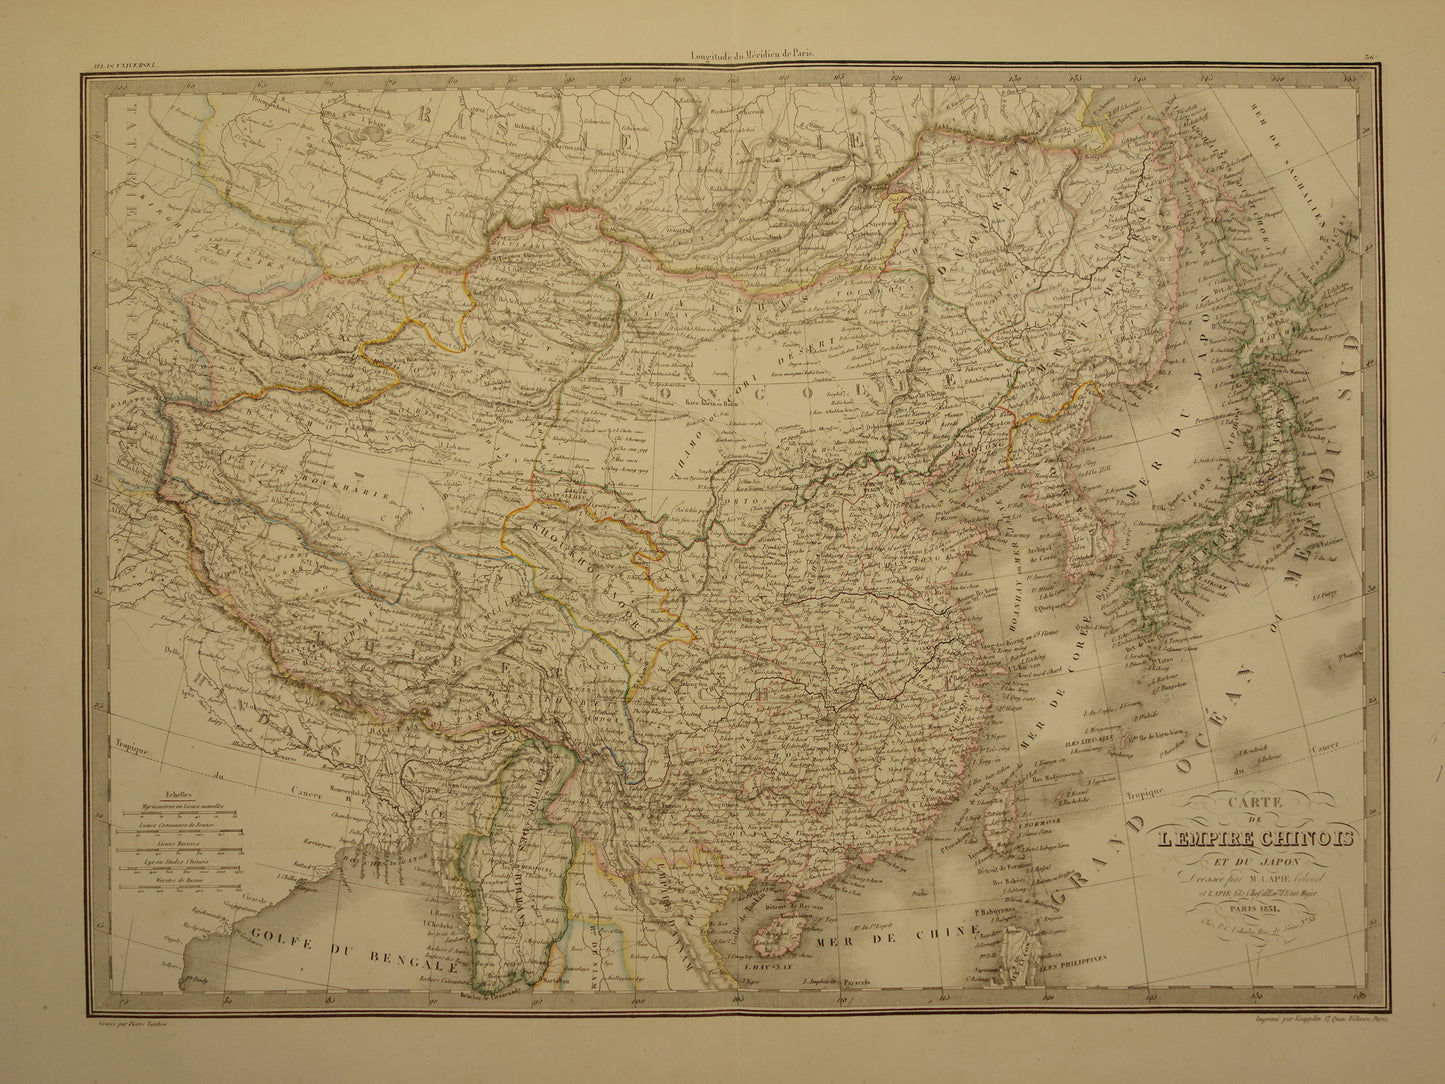 CHINA oude kaart van Chinese Rijk uit 1851 Grote antieke landkaart van Japan Korea China - originele vintage historische kaarten